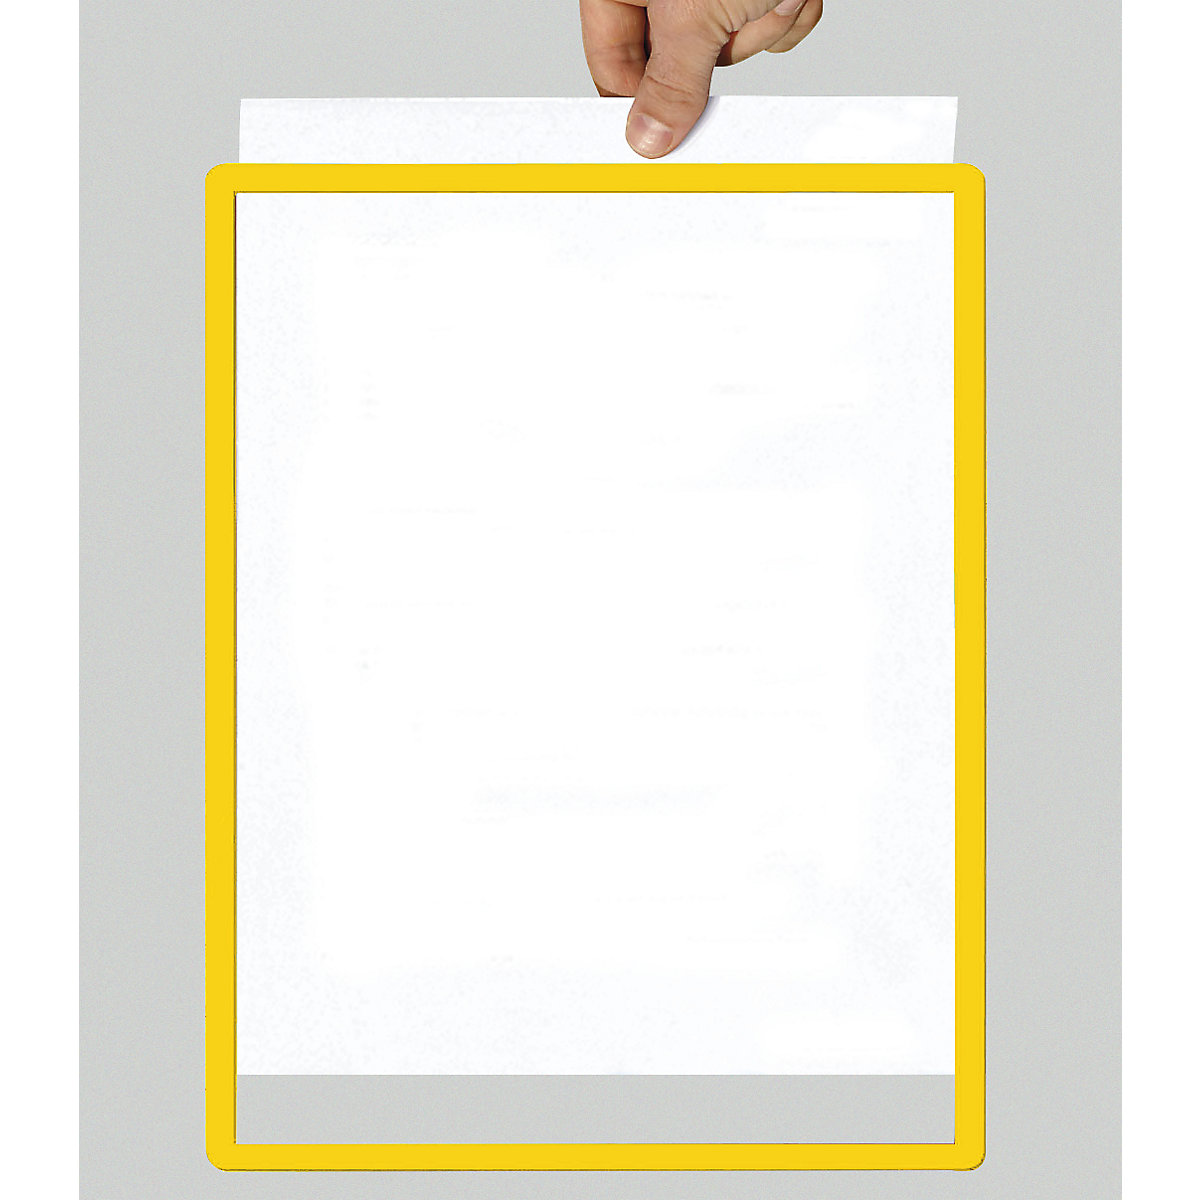 Afstotend Nominaal Maak plaats Frame met transparante folie: papierformaat A4, VE = 10 stuks | KAISER+KRAFT